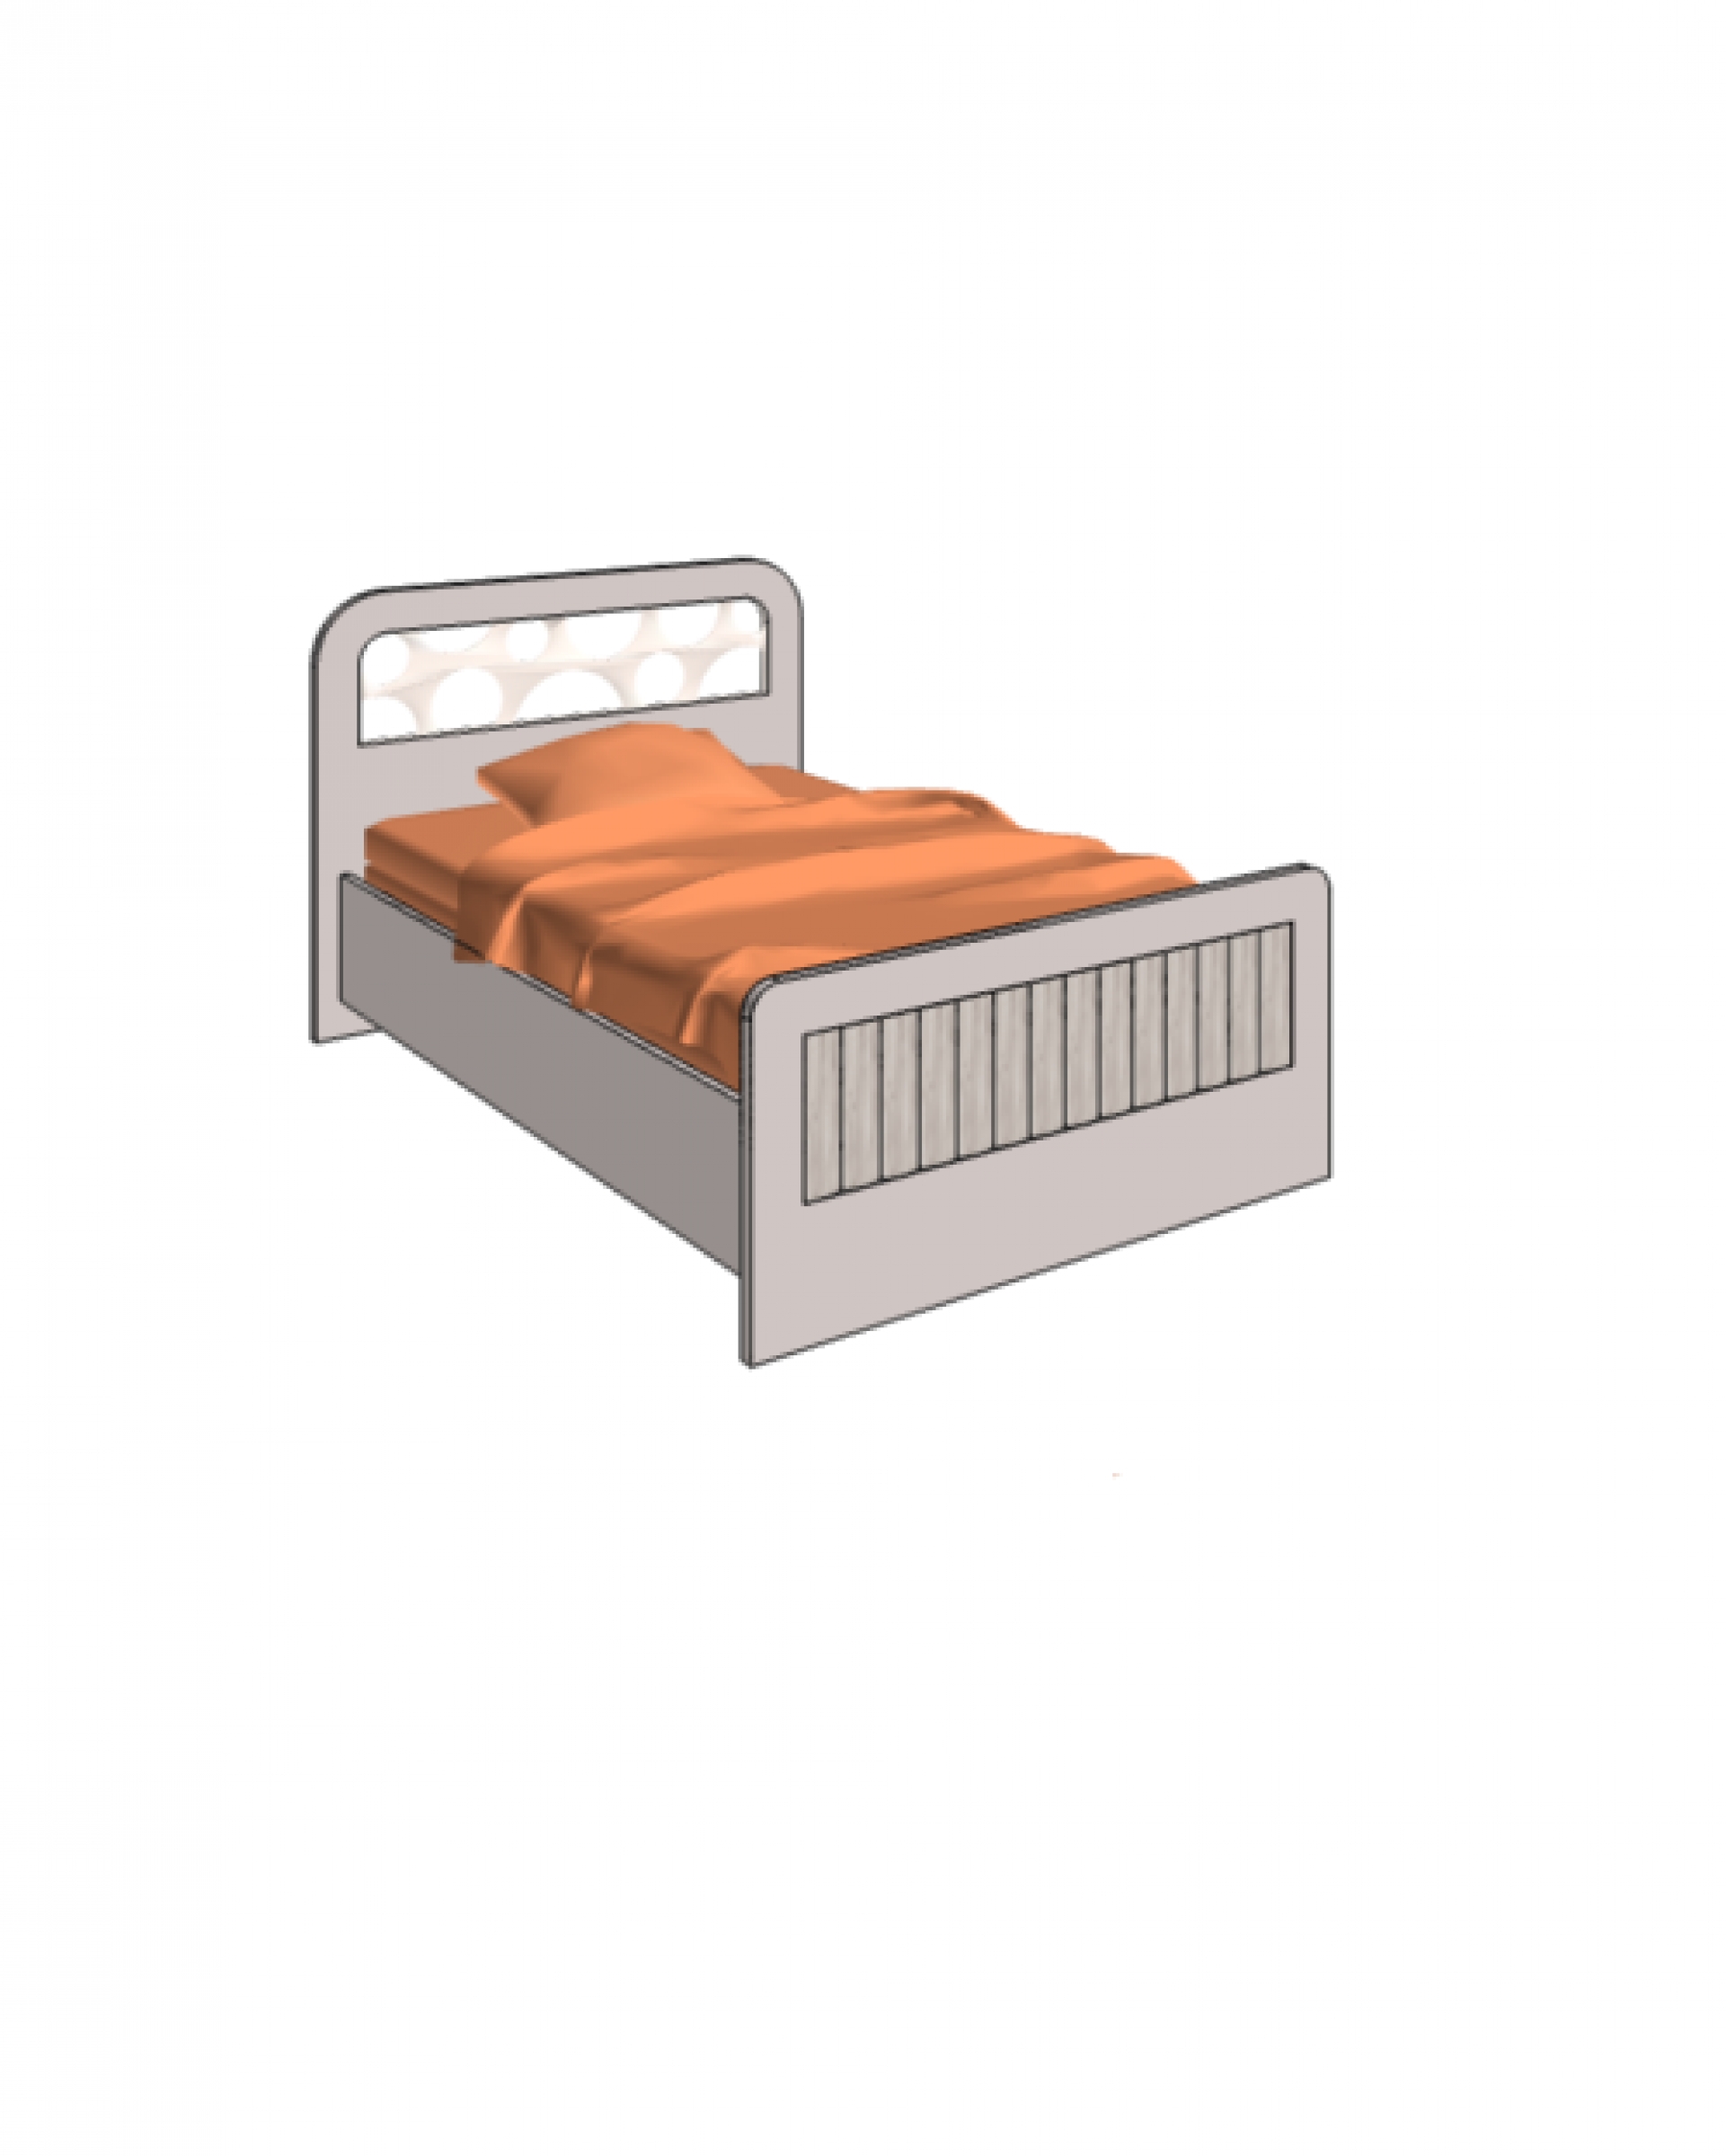 Klюkva кровать отдельностоящая с коробами и подъемным механизмом. арт: VB2_12